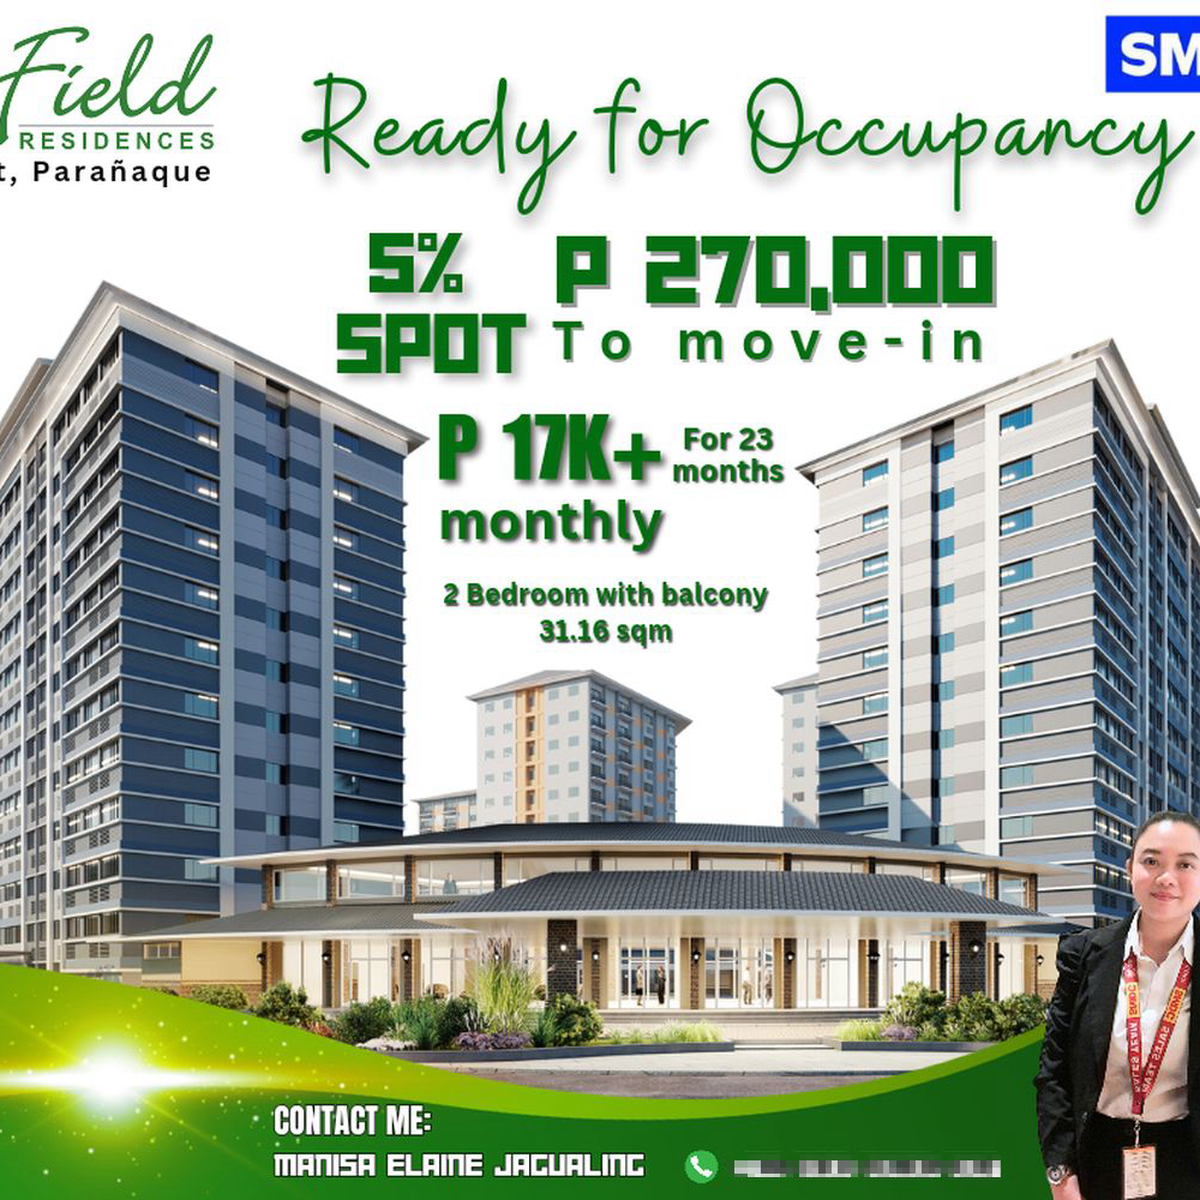 31.16 sqm 2-bedroom Condo For Sale in Paranaque Metro Manila